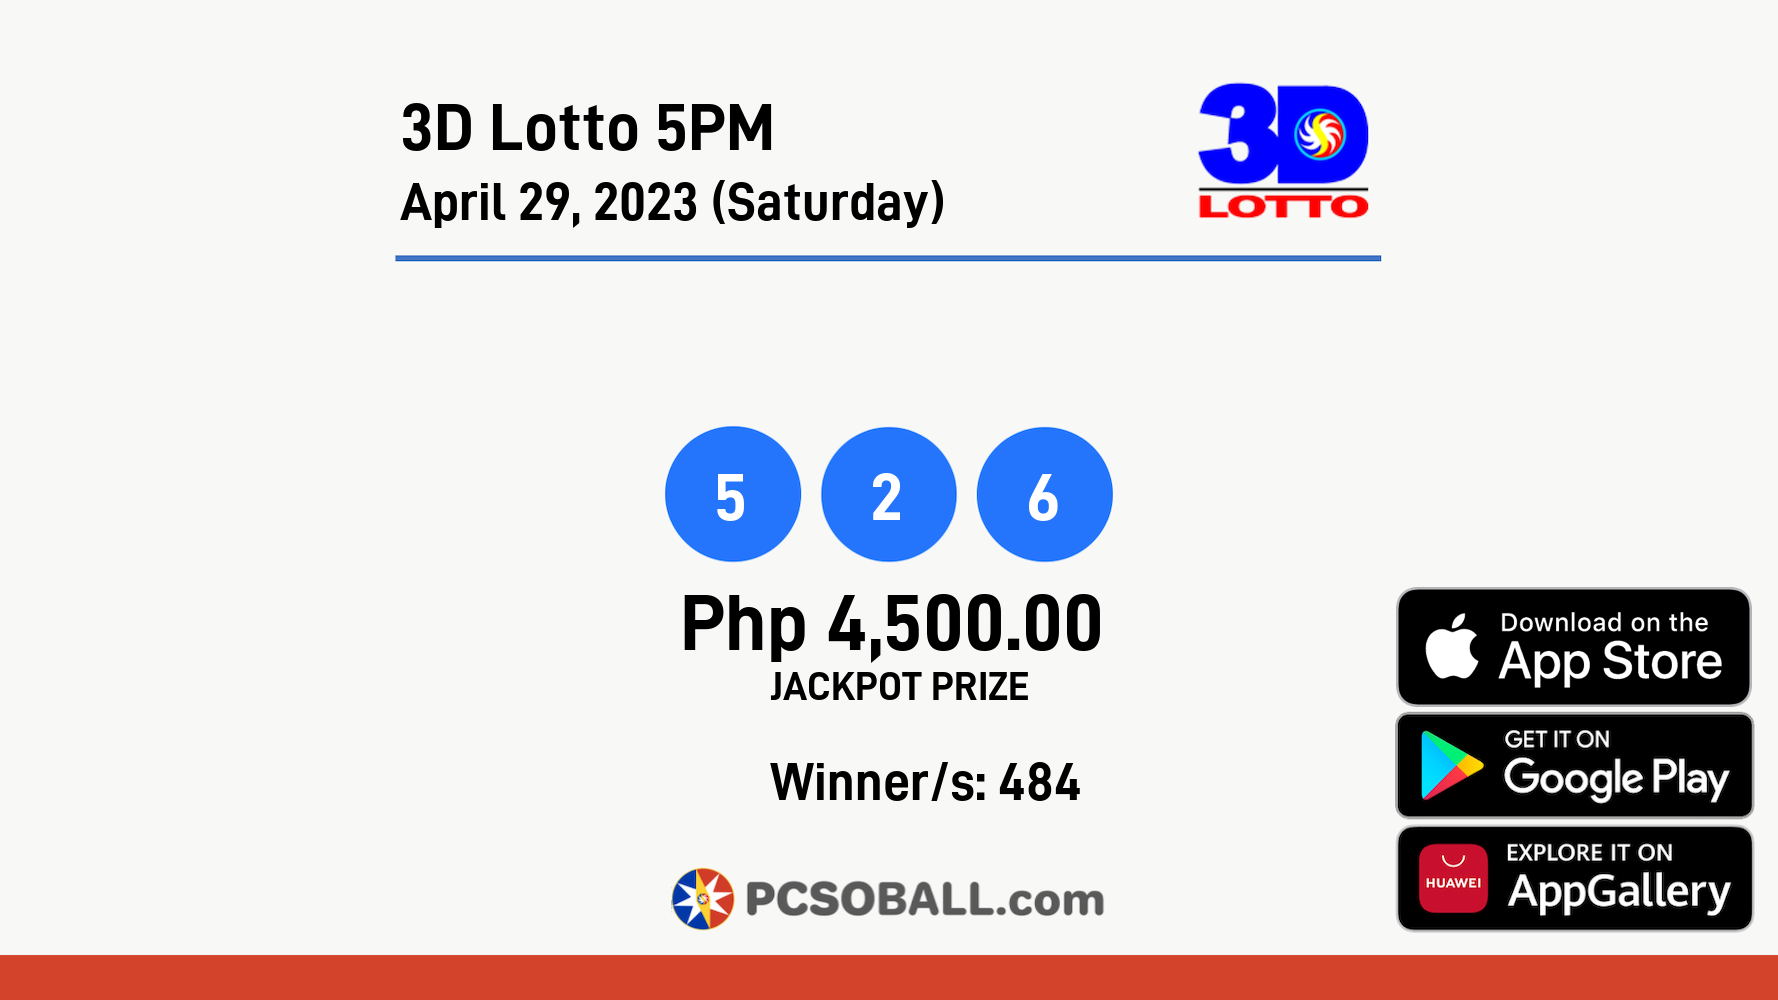 3D Lotto 5PM April 29, 2023 (Saturday) Result